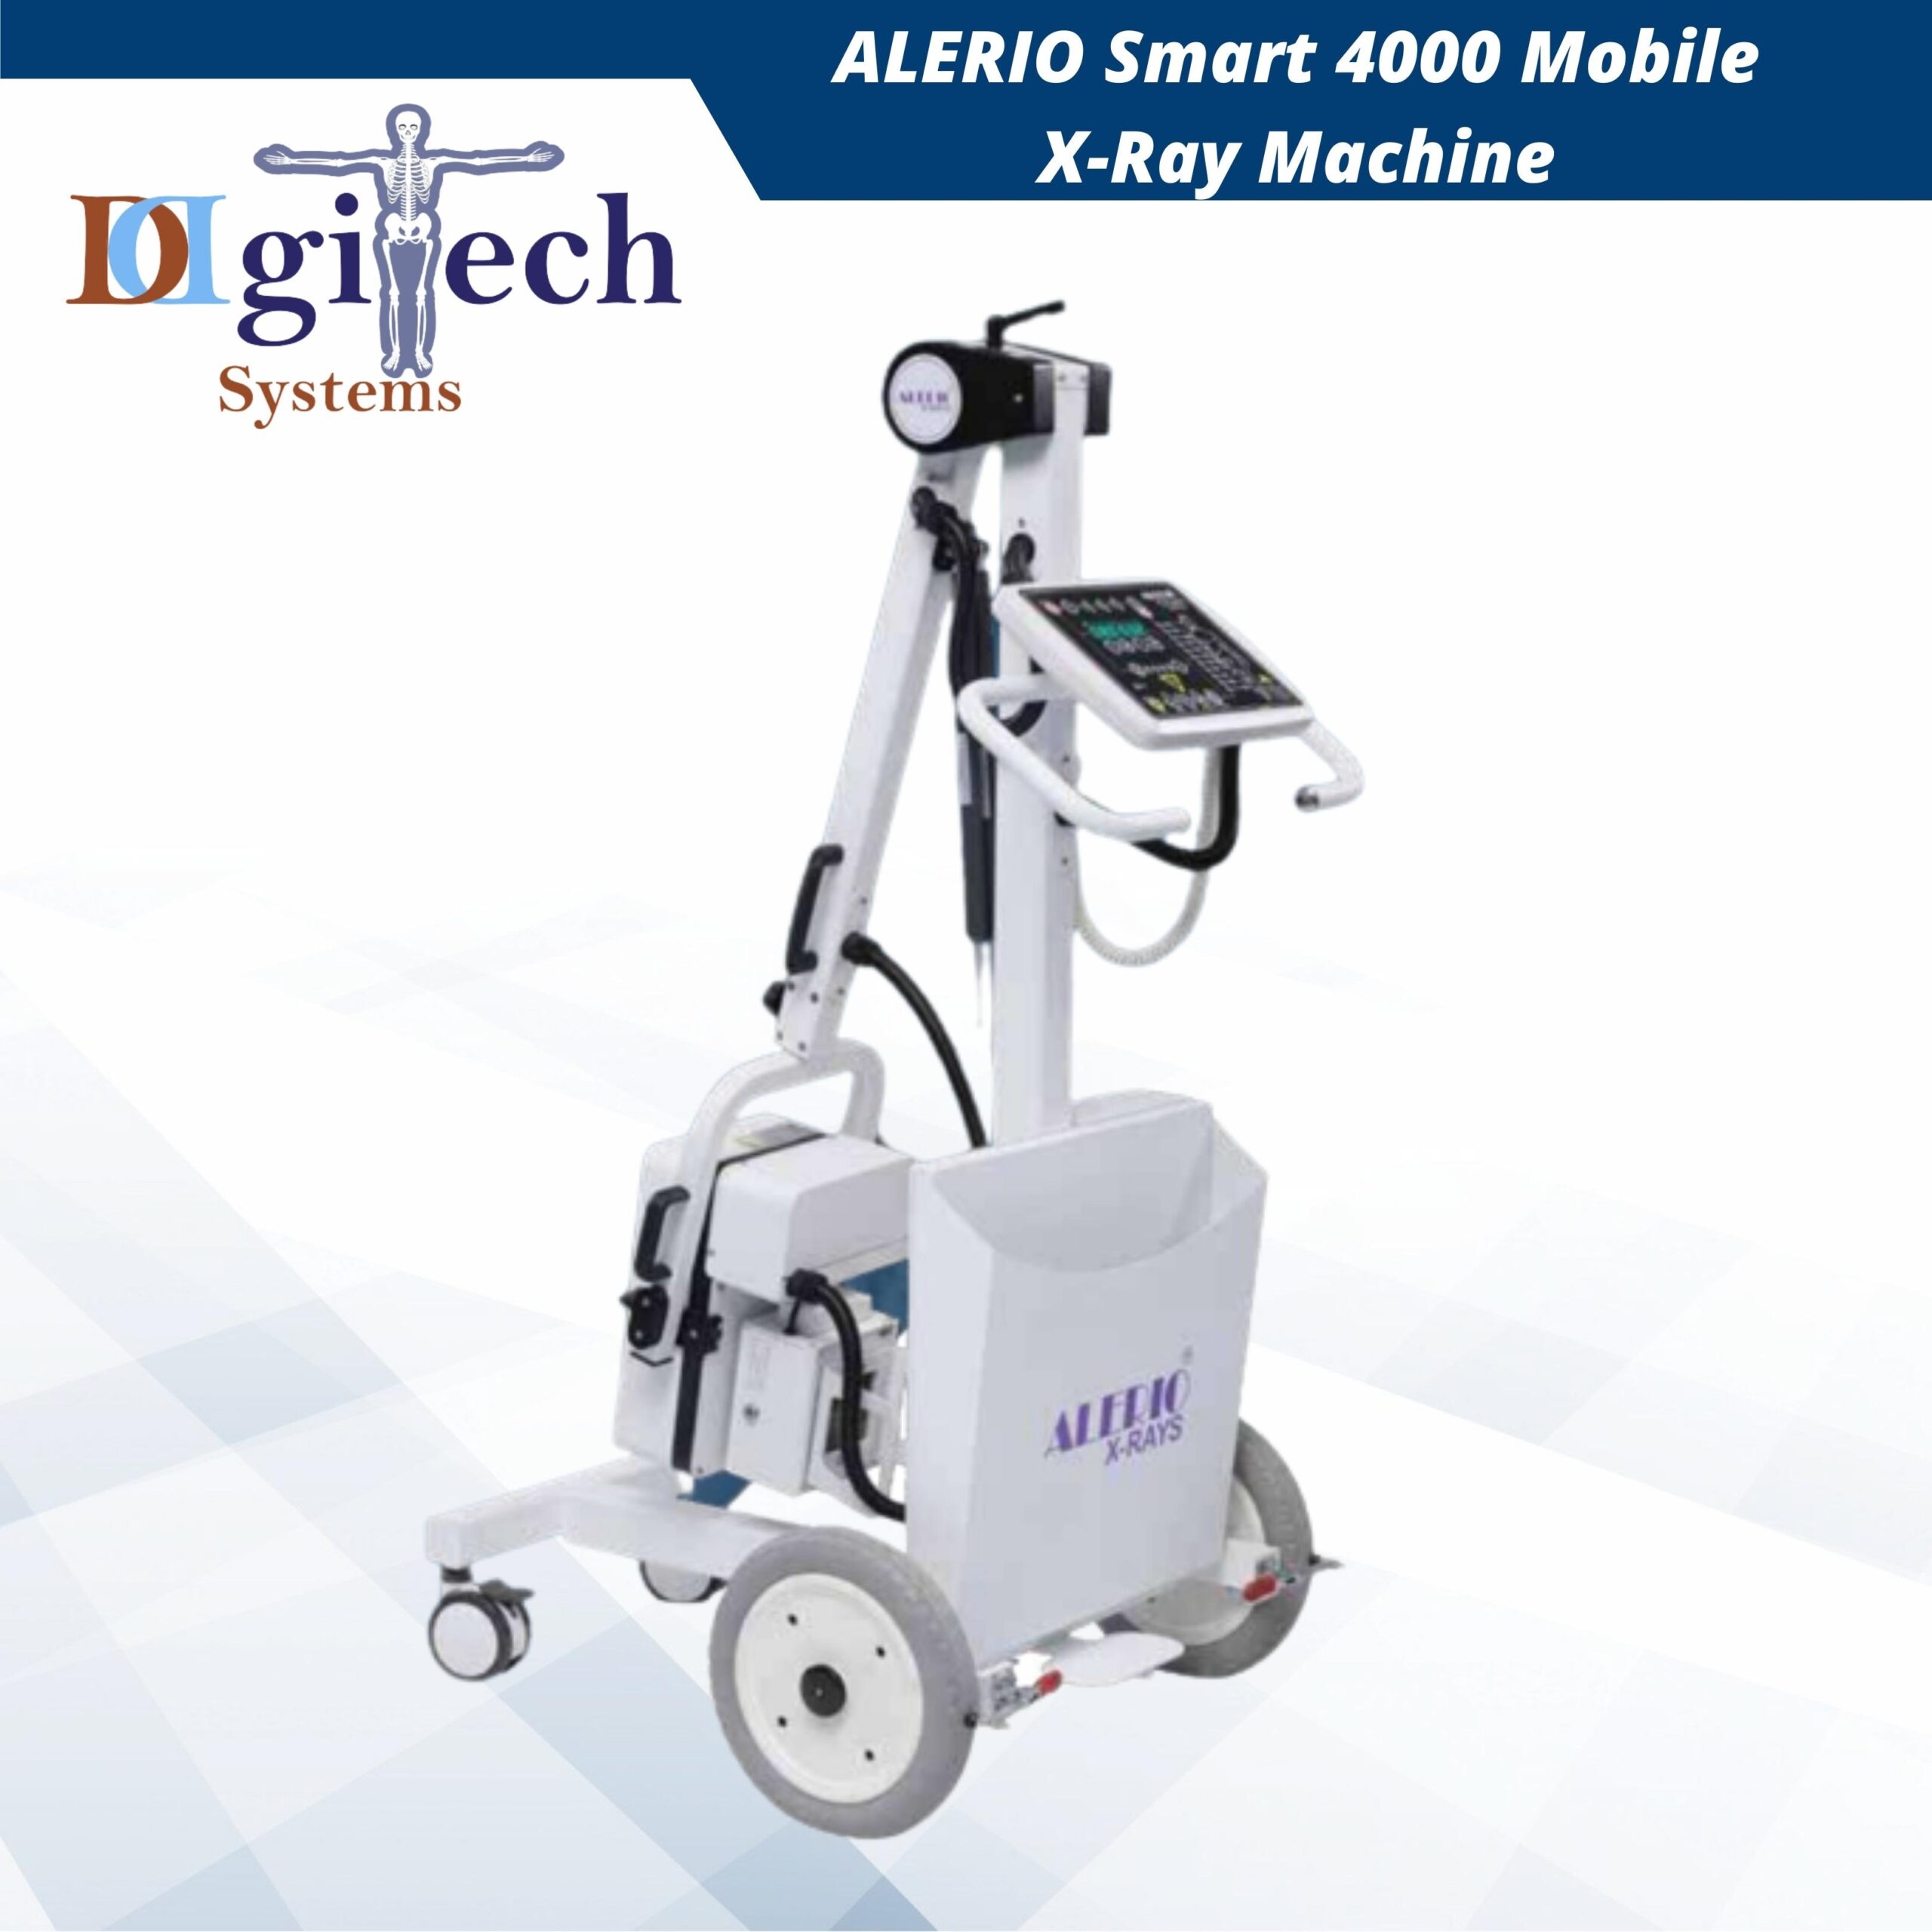 ALERIO Smart 4000 Mobile X-Ray Machine